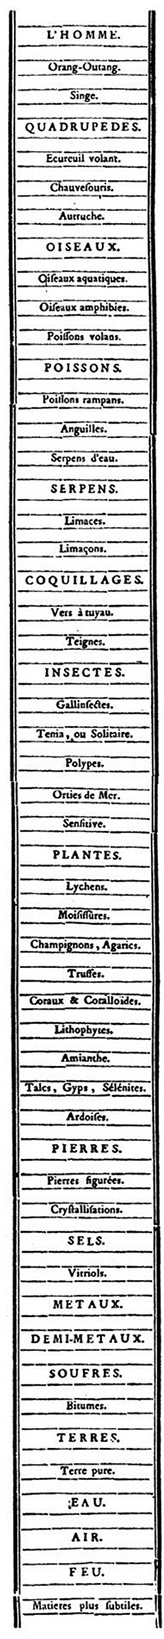 charles_bonnet-1745-traite_d_insectologie